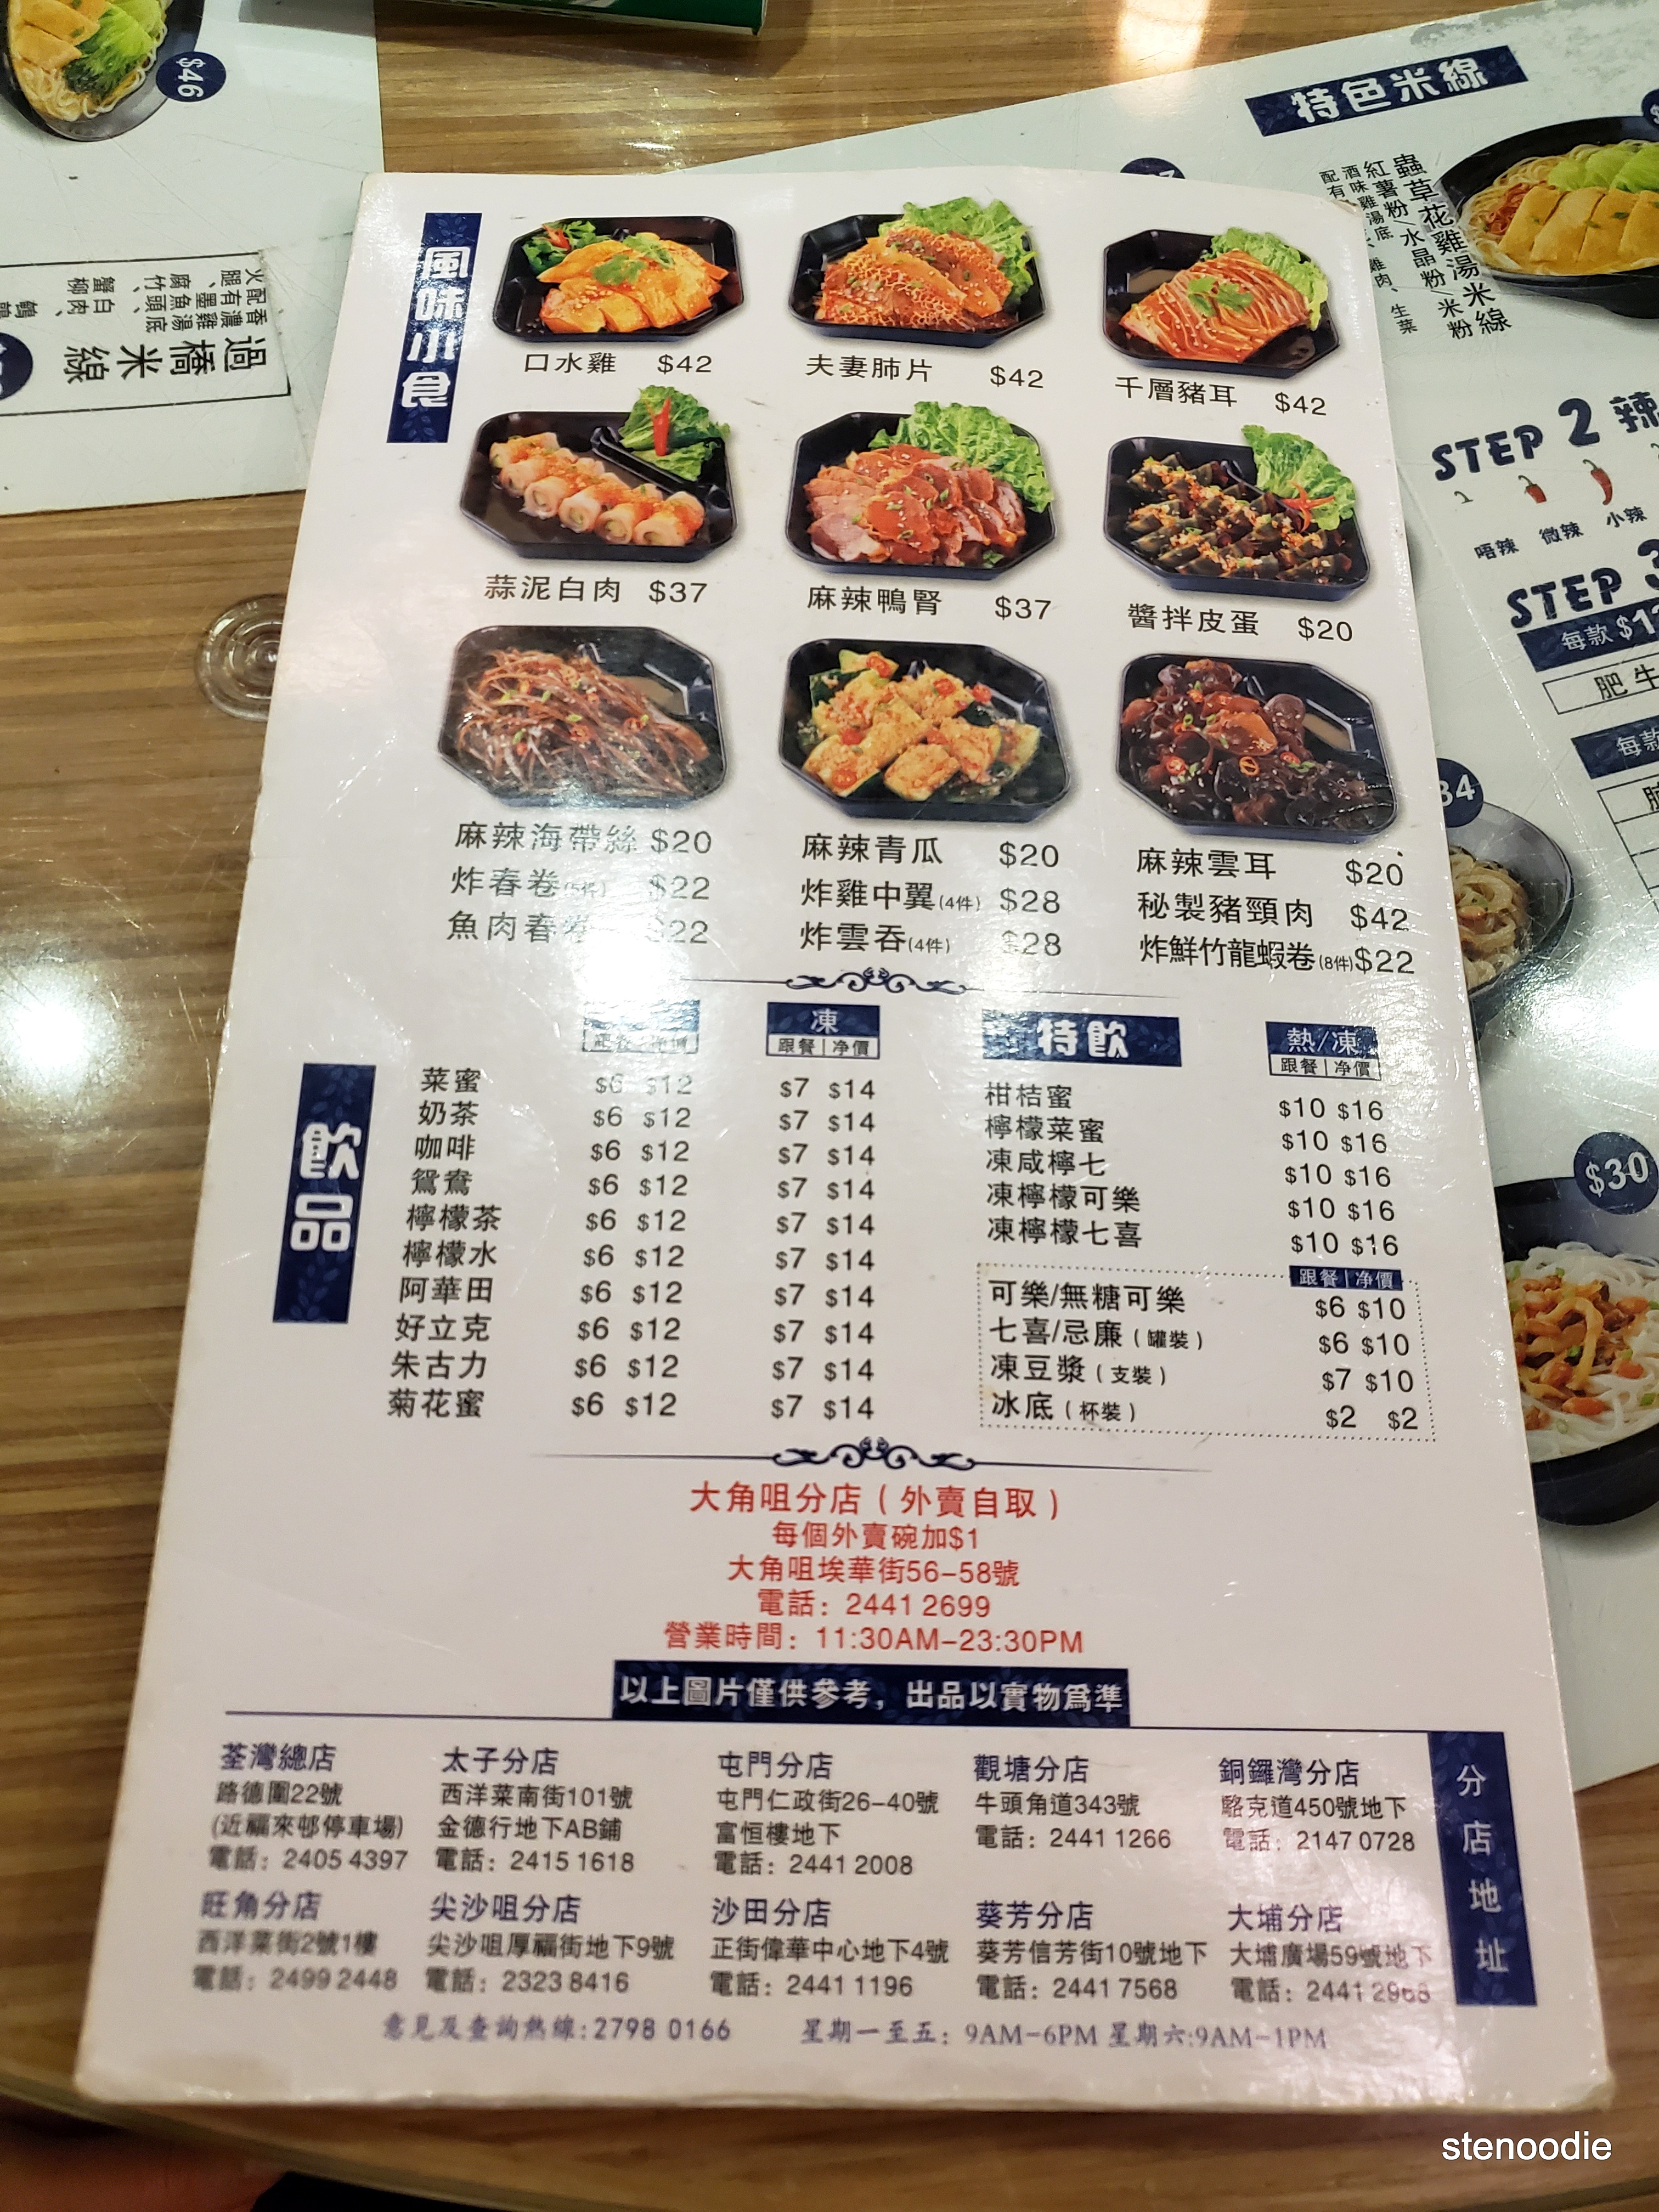 雲桂香米線專門店 menu and prices